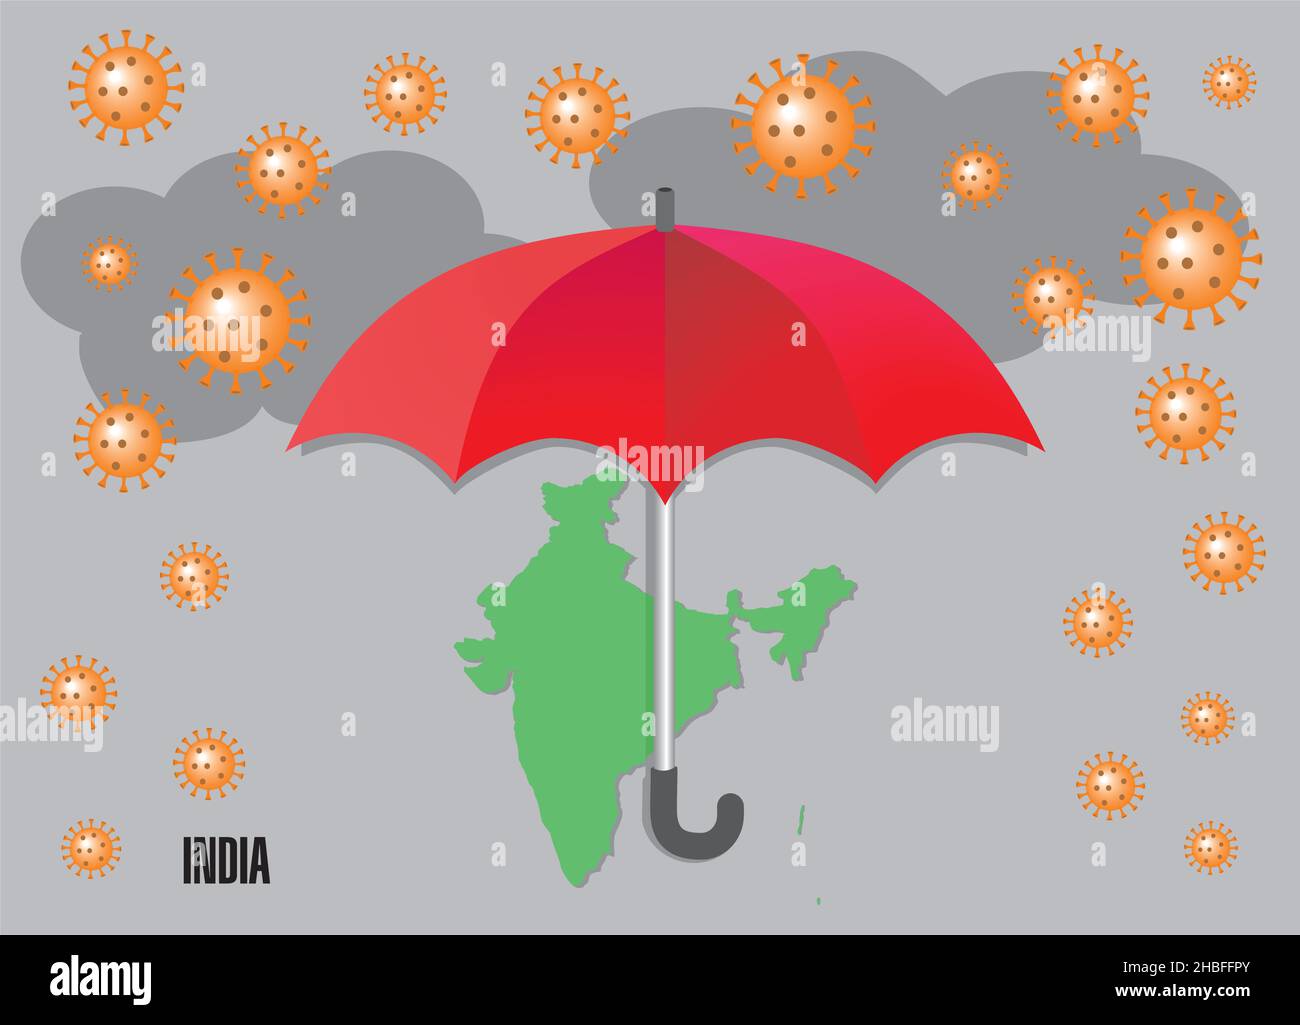 Coronarain über Indien. Regenschirm versucht, vor Krise und Sorgen zu schützen Vektor-Illustration. Stock Vektor